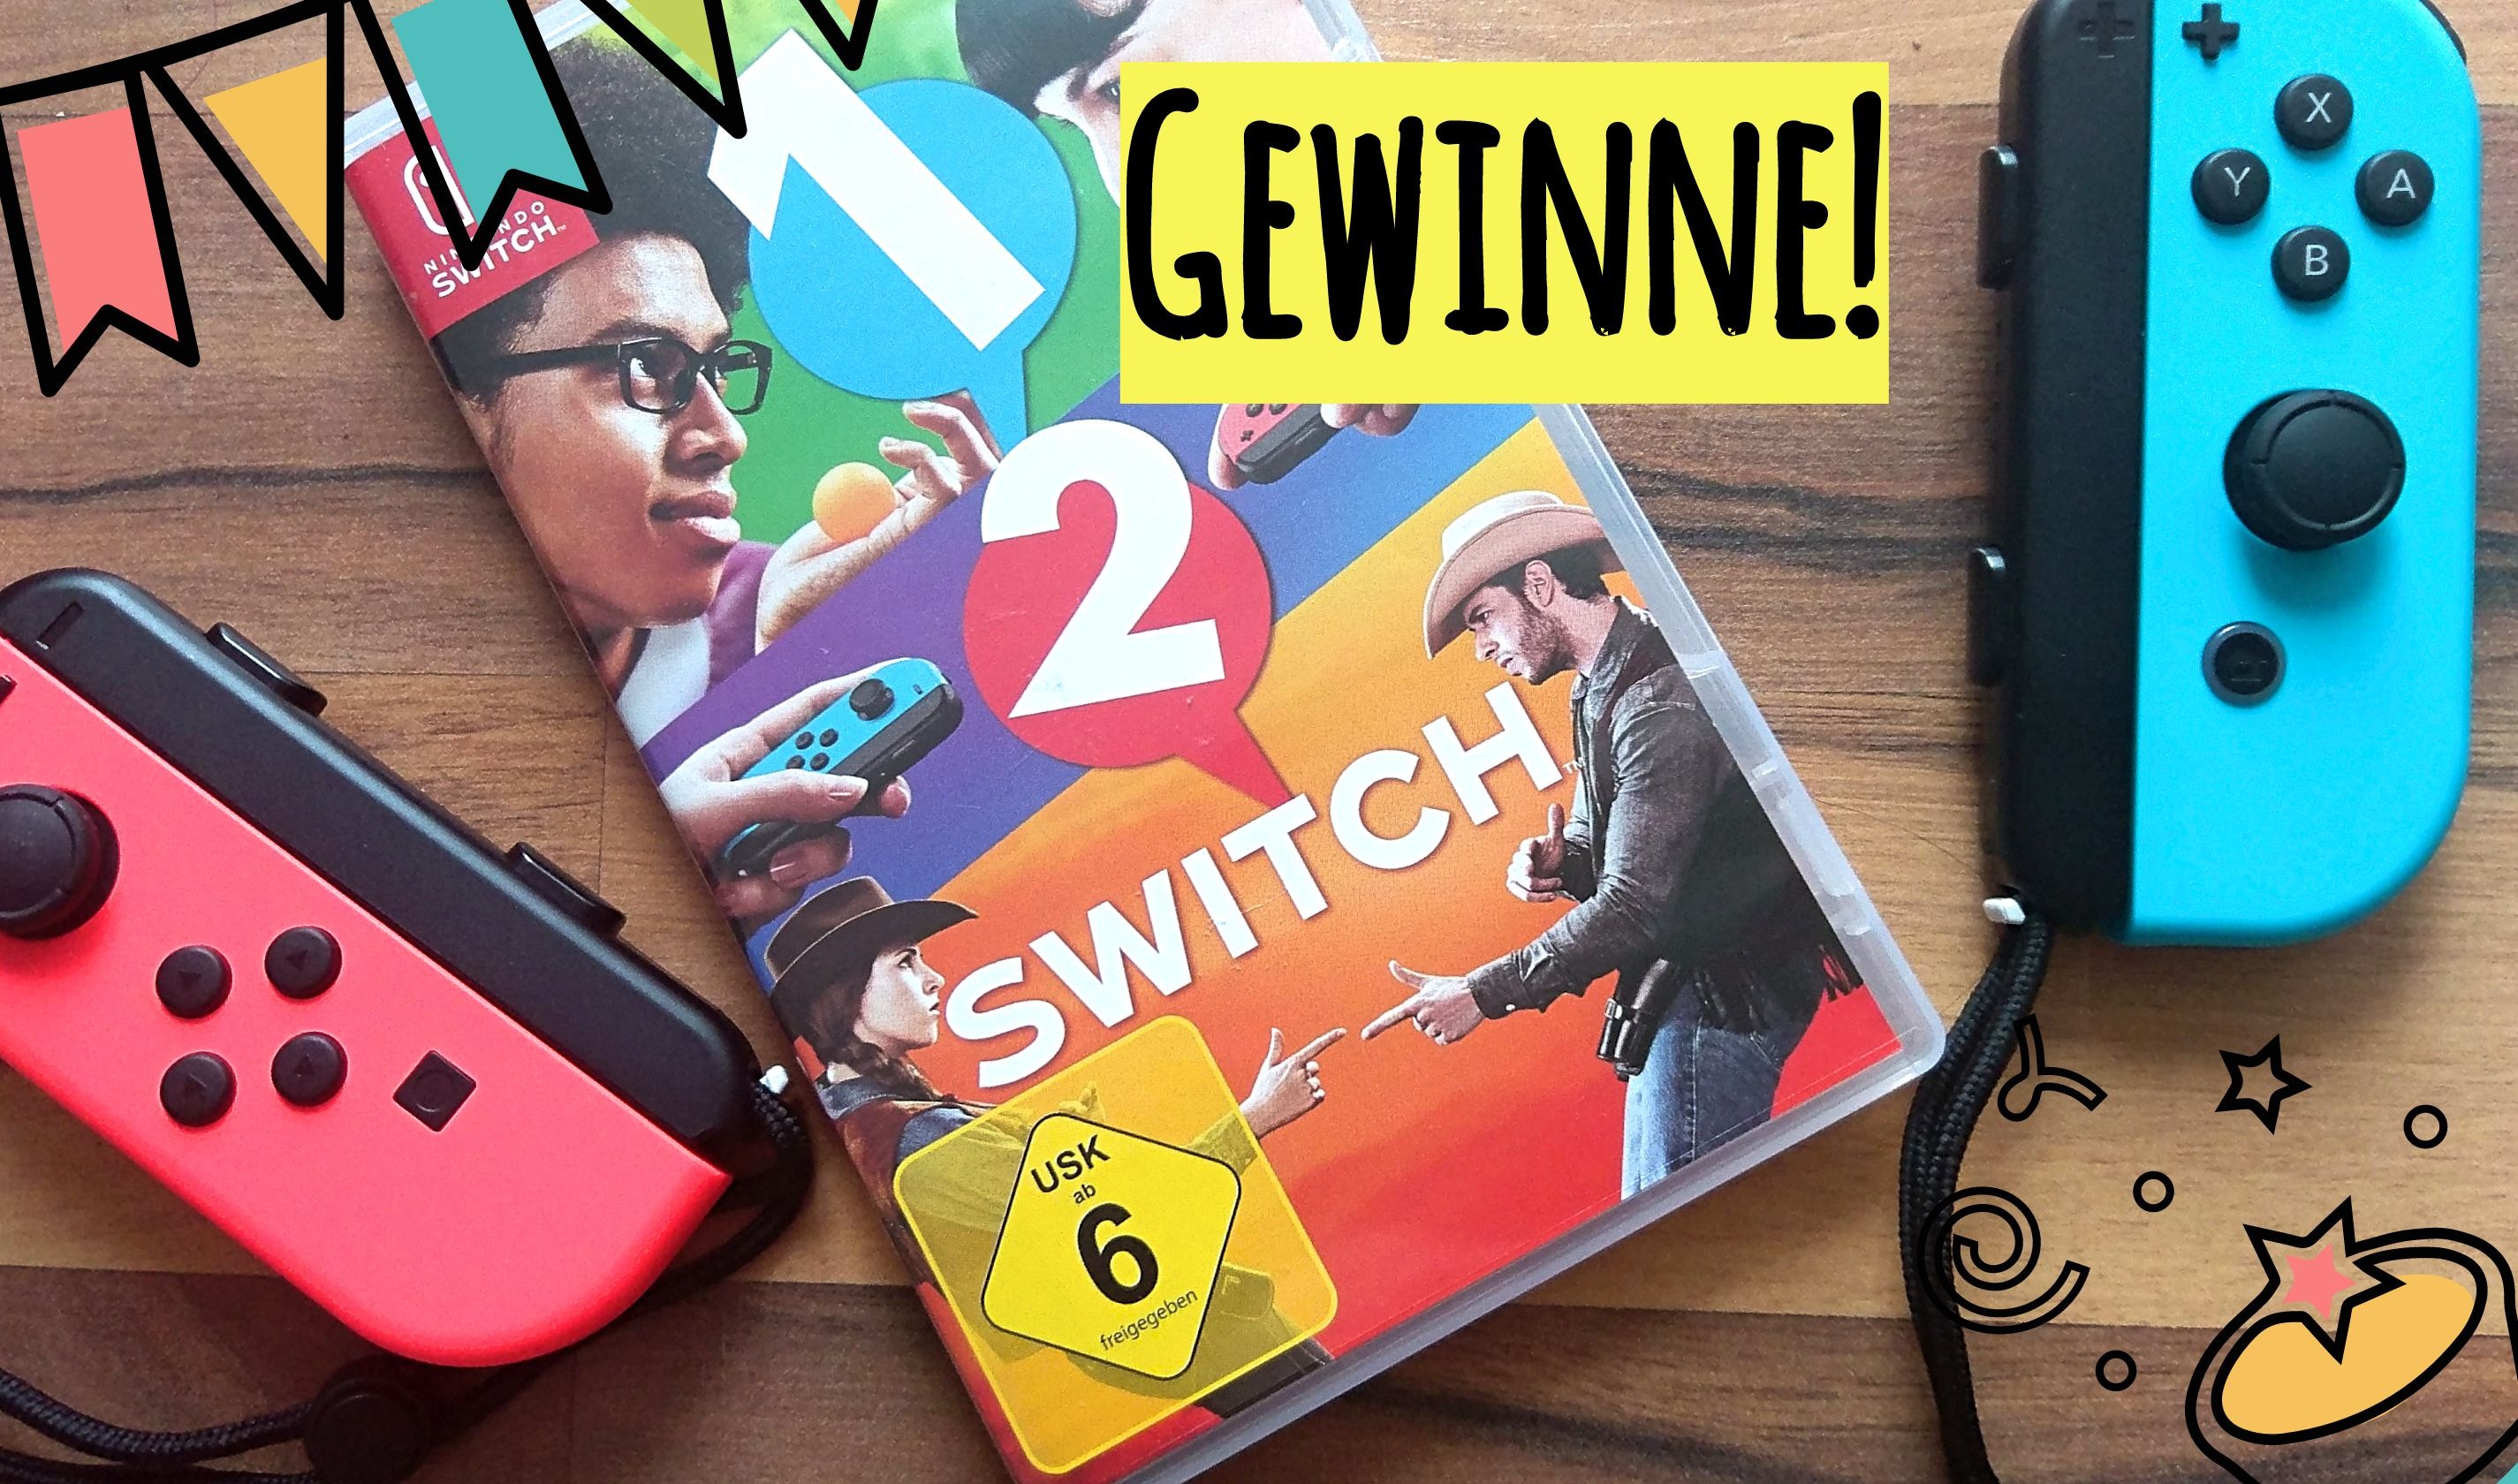 1-2-Switch